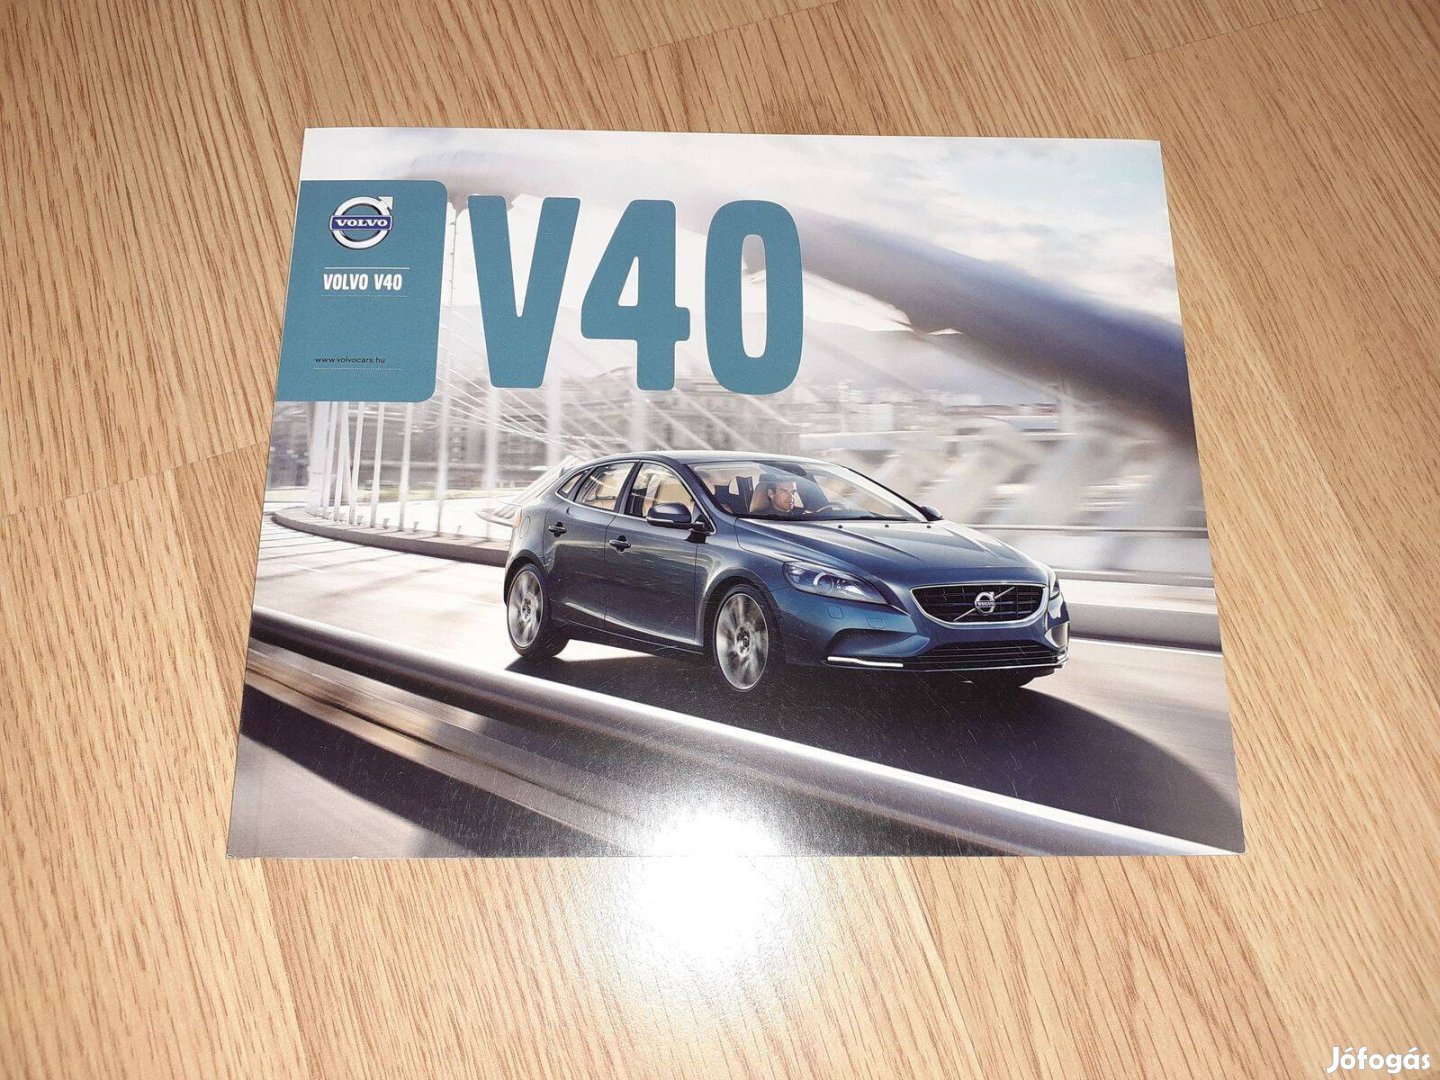 Volvo V40 prospektus - 2013, magyar nyelvű